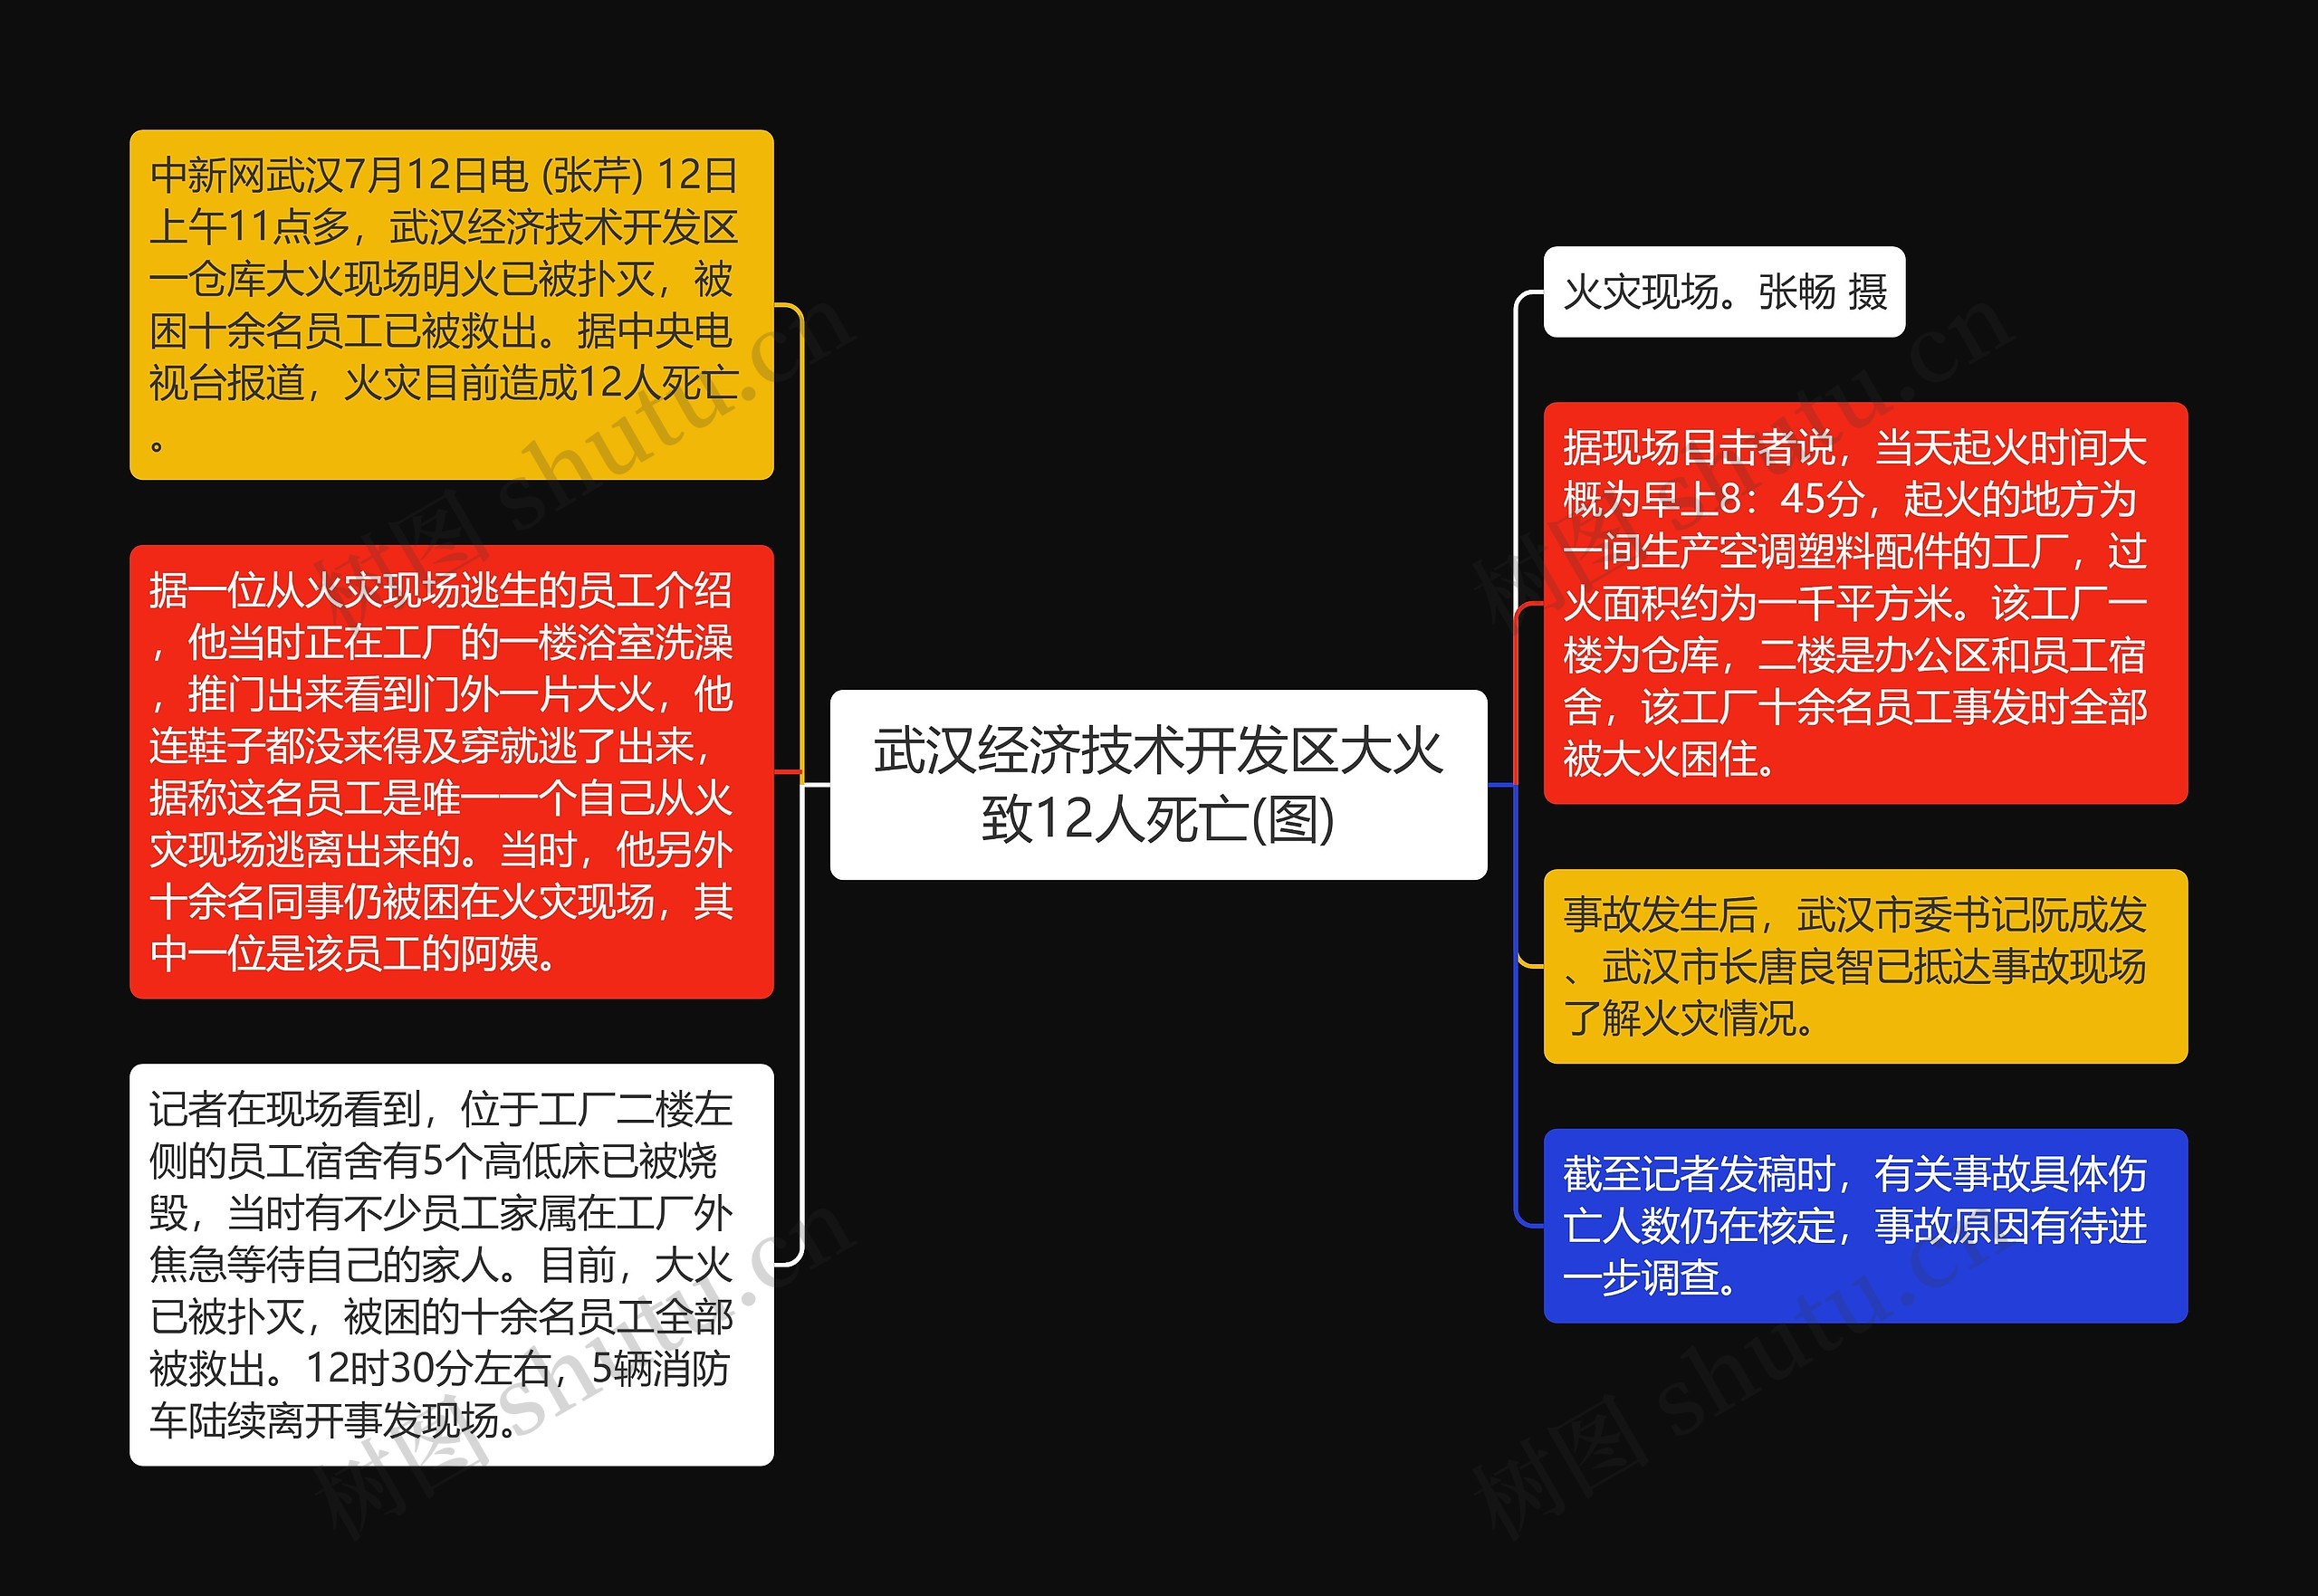 武汉经济技术开发区大火致12人死亡(图)思维导图